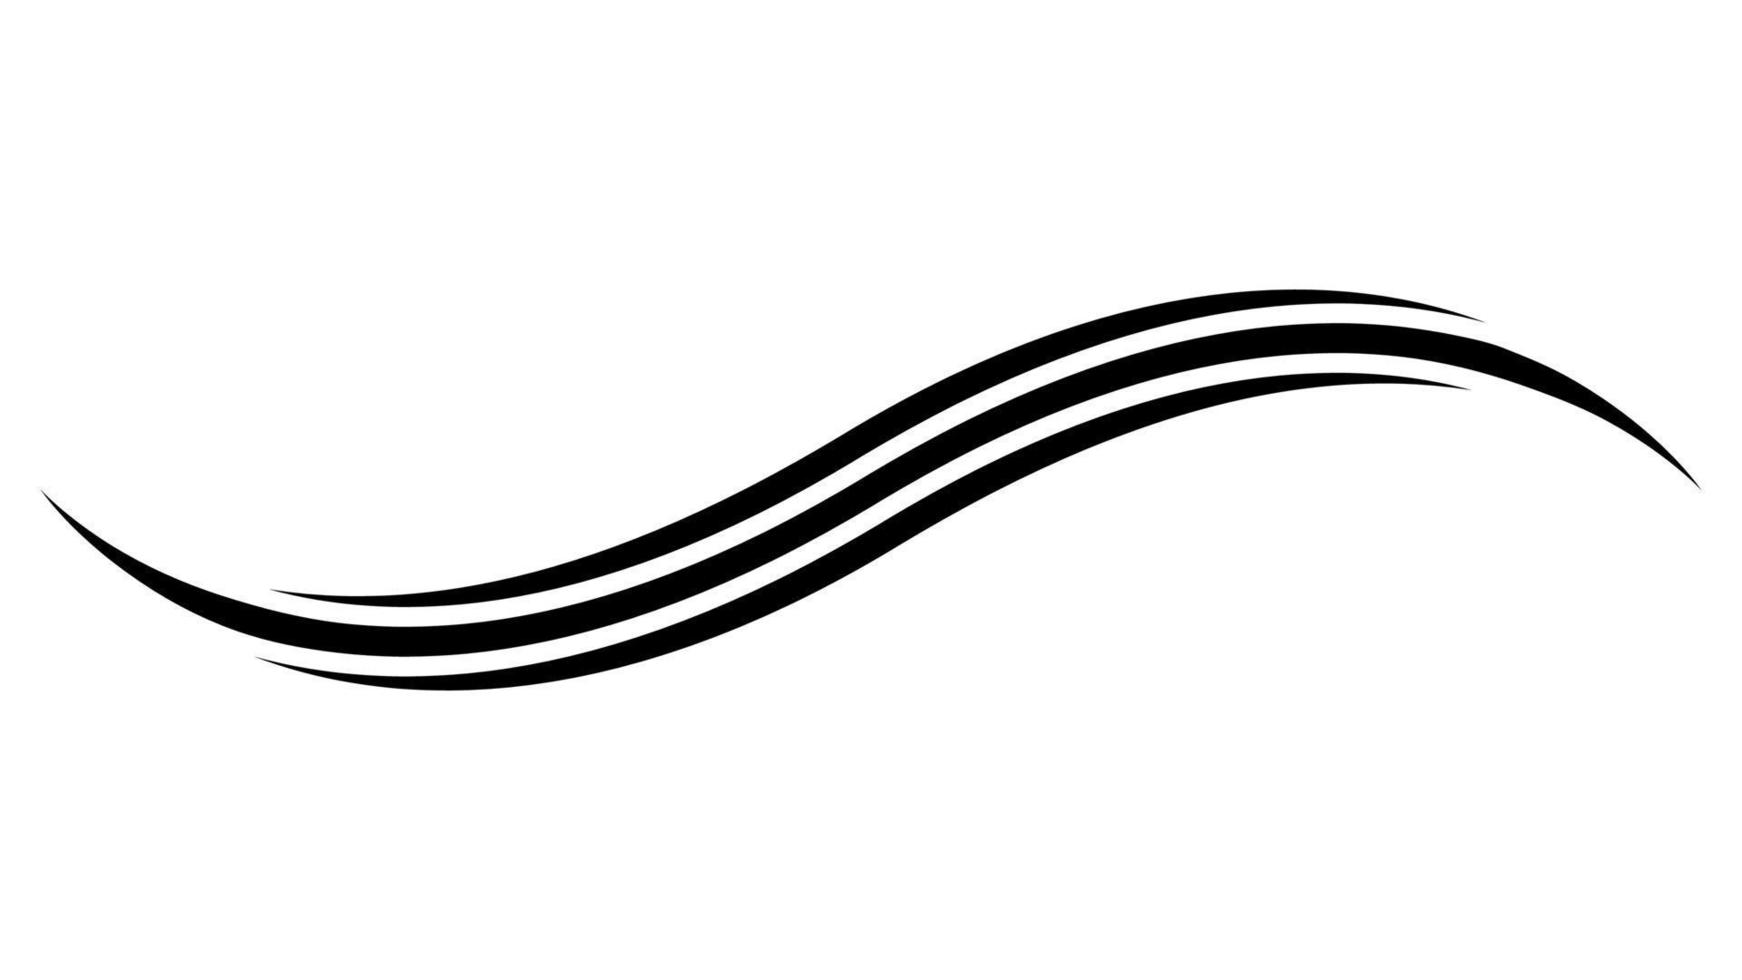 https://static.vecteezy.com/ti/vetor-gratis/p1/20716634-curva-linha-faixa-redemoinho-aceno-forma-projeto-curva-linha-energia-vetor.jpg